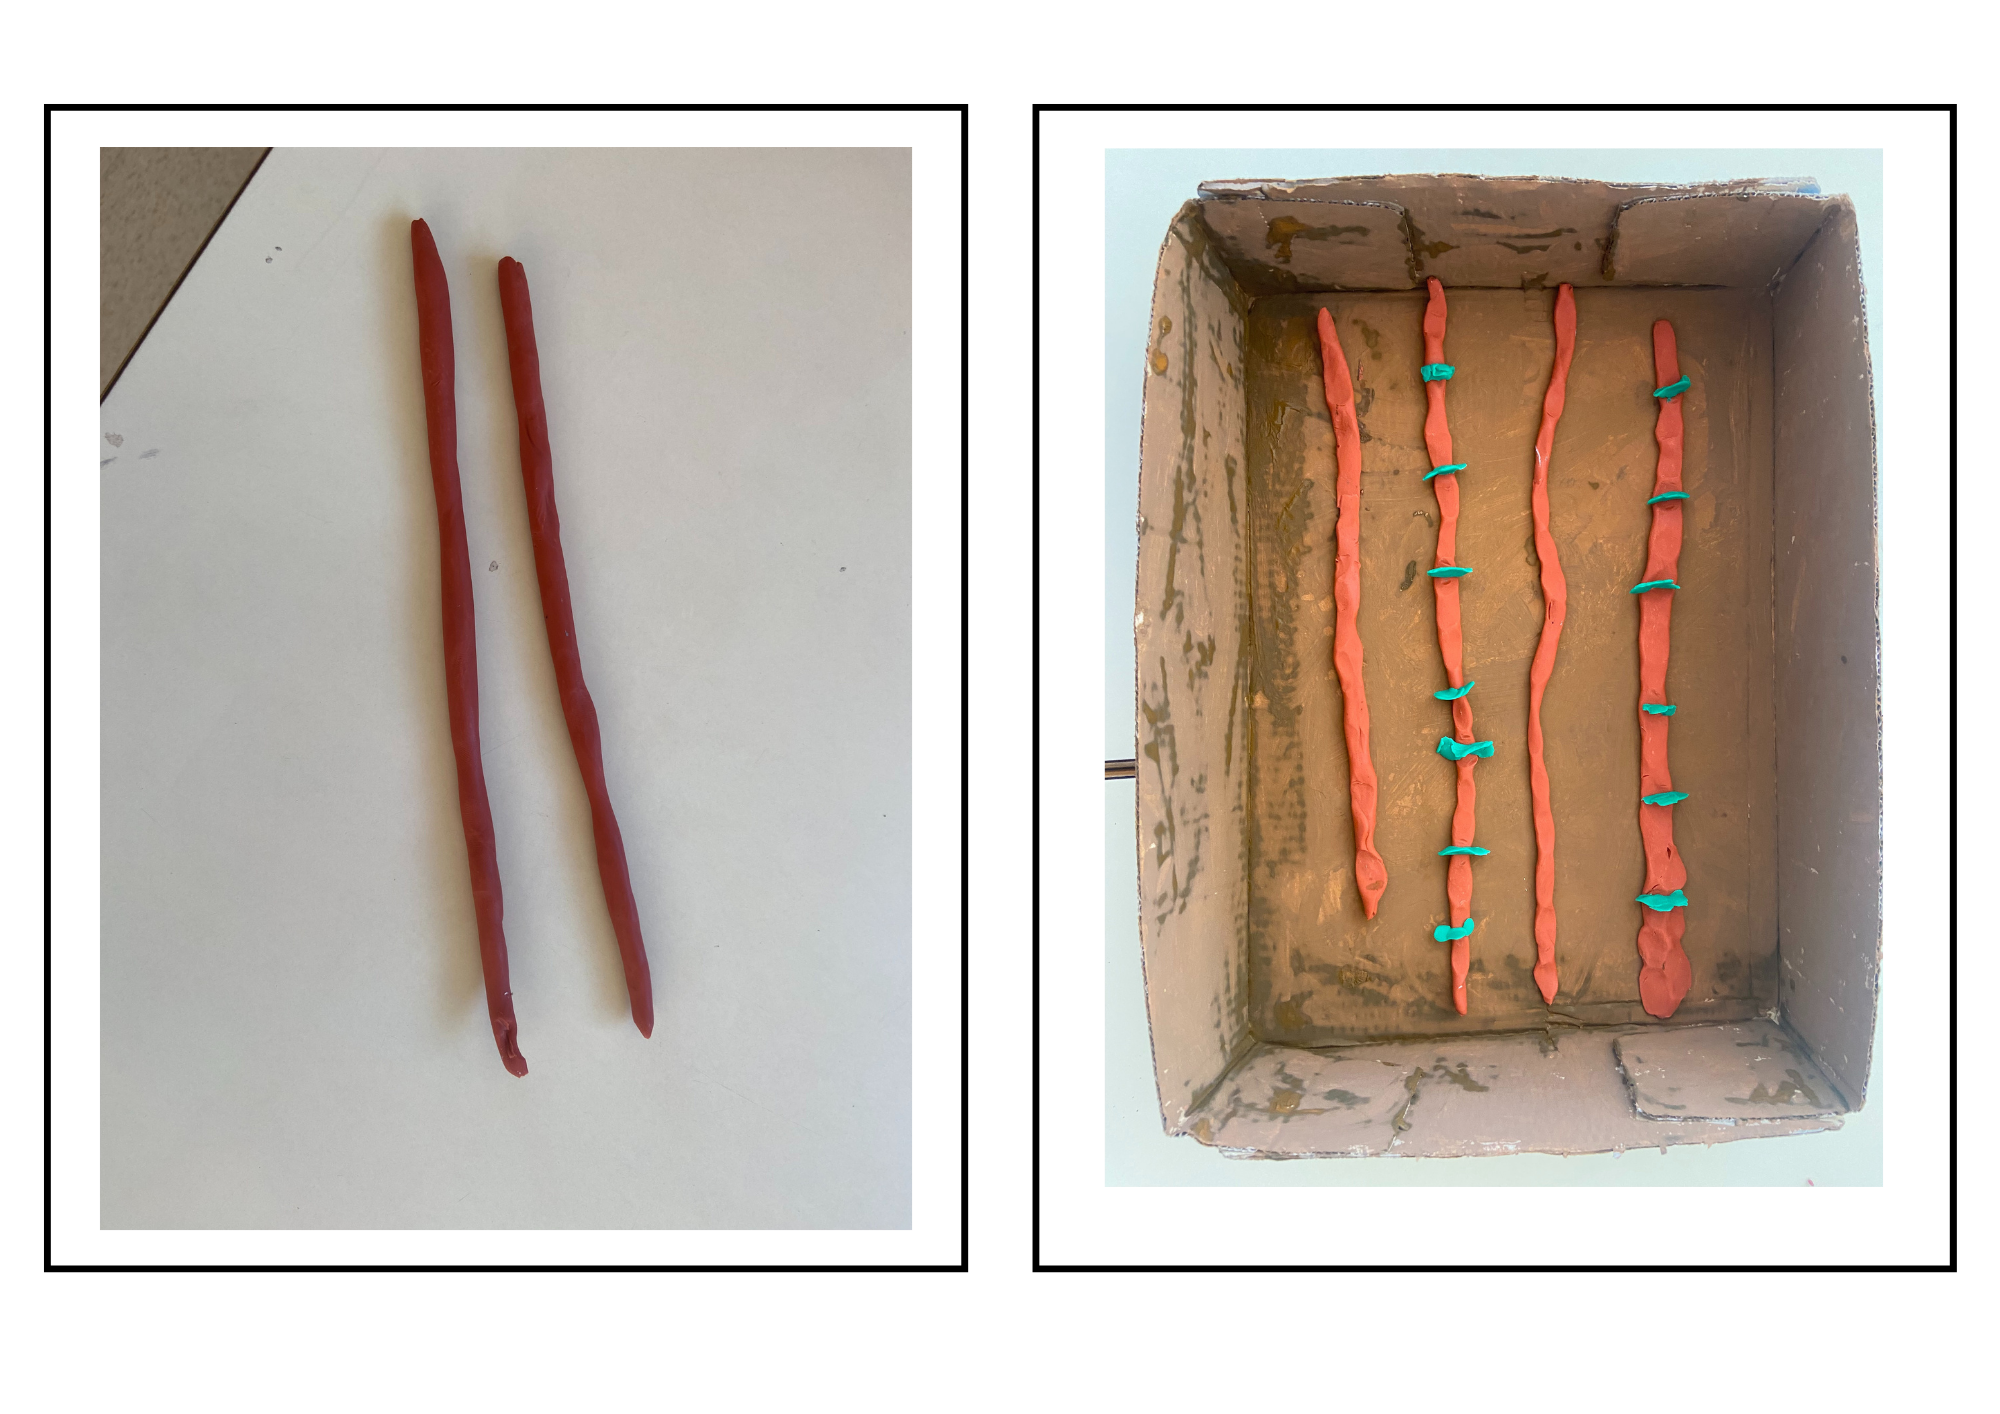 En la imagen aparecen 2 imágenes, en la de la izquierda se muestra como crear la tierra para sembrar con la plastilina, y en la derecha ya la vemos colocada en la tapa de cartón.